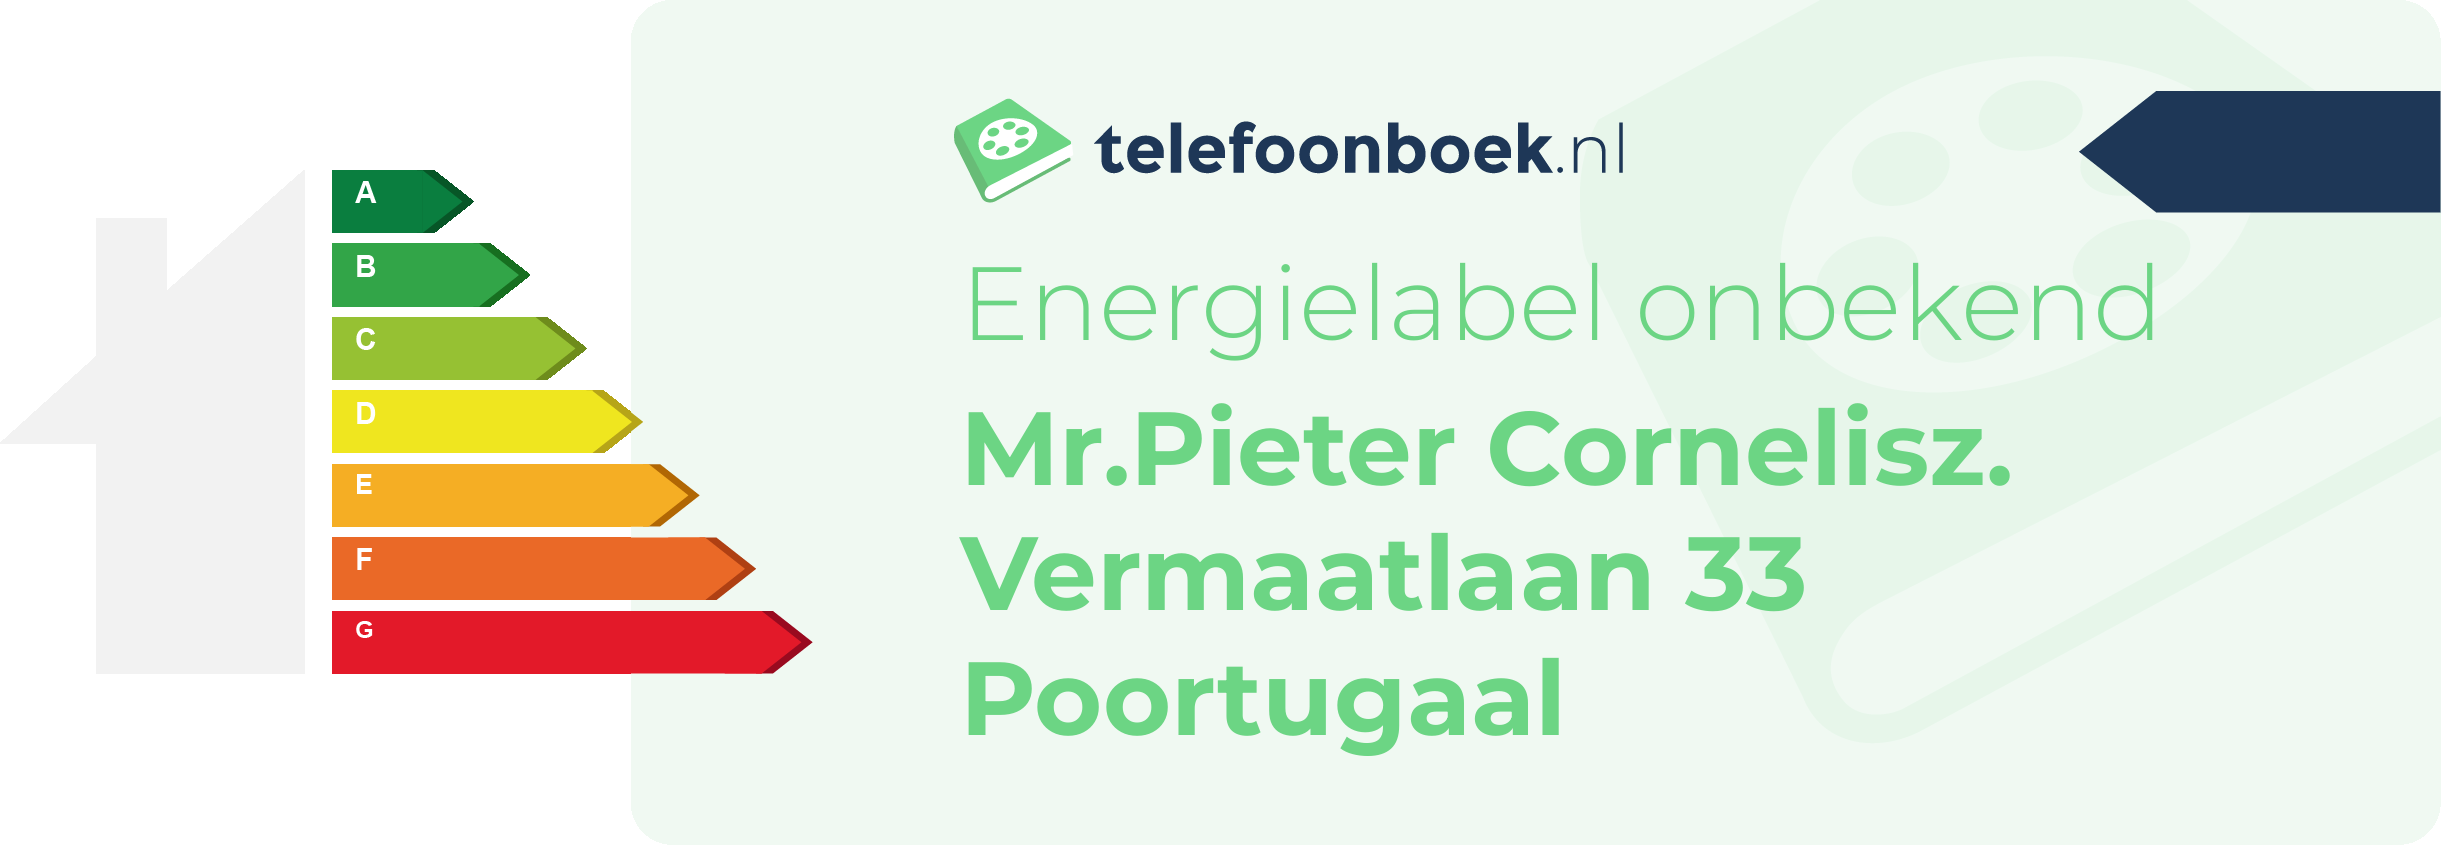 Energielabel Mr.Pieter Cornelisz. Vermaatlaan 33 Poortugaal